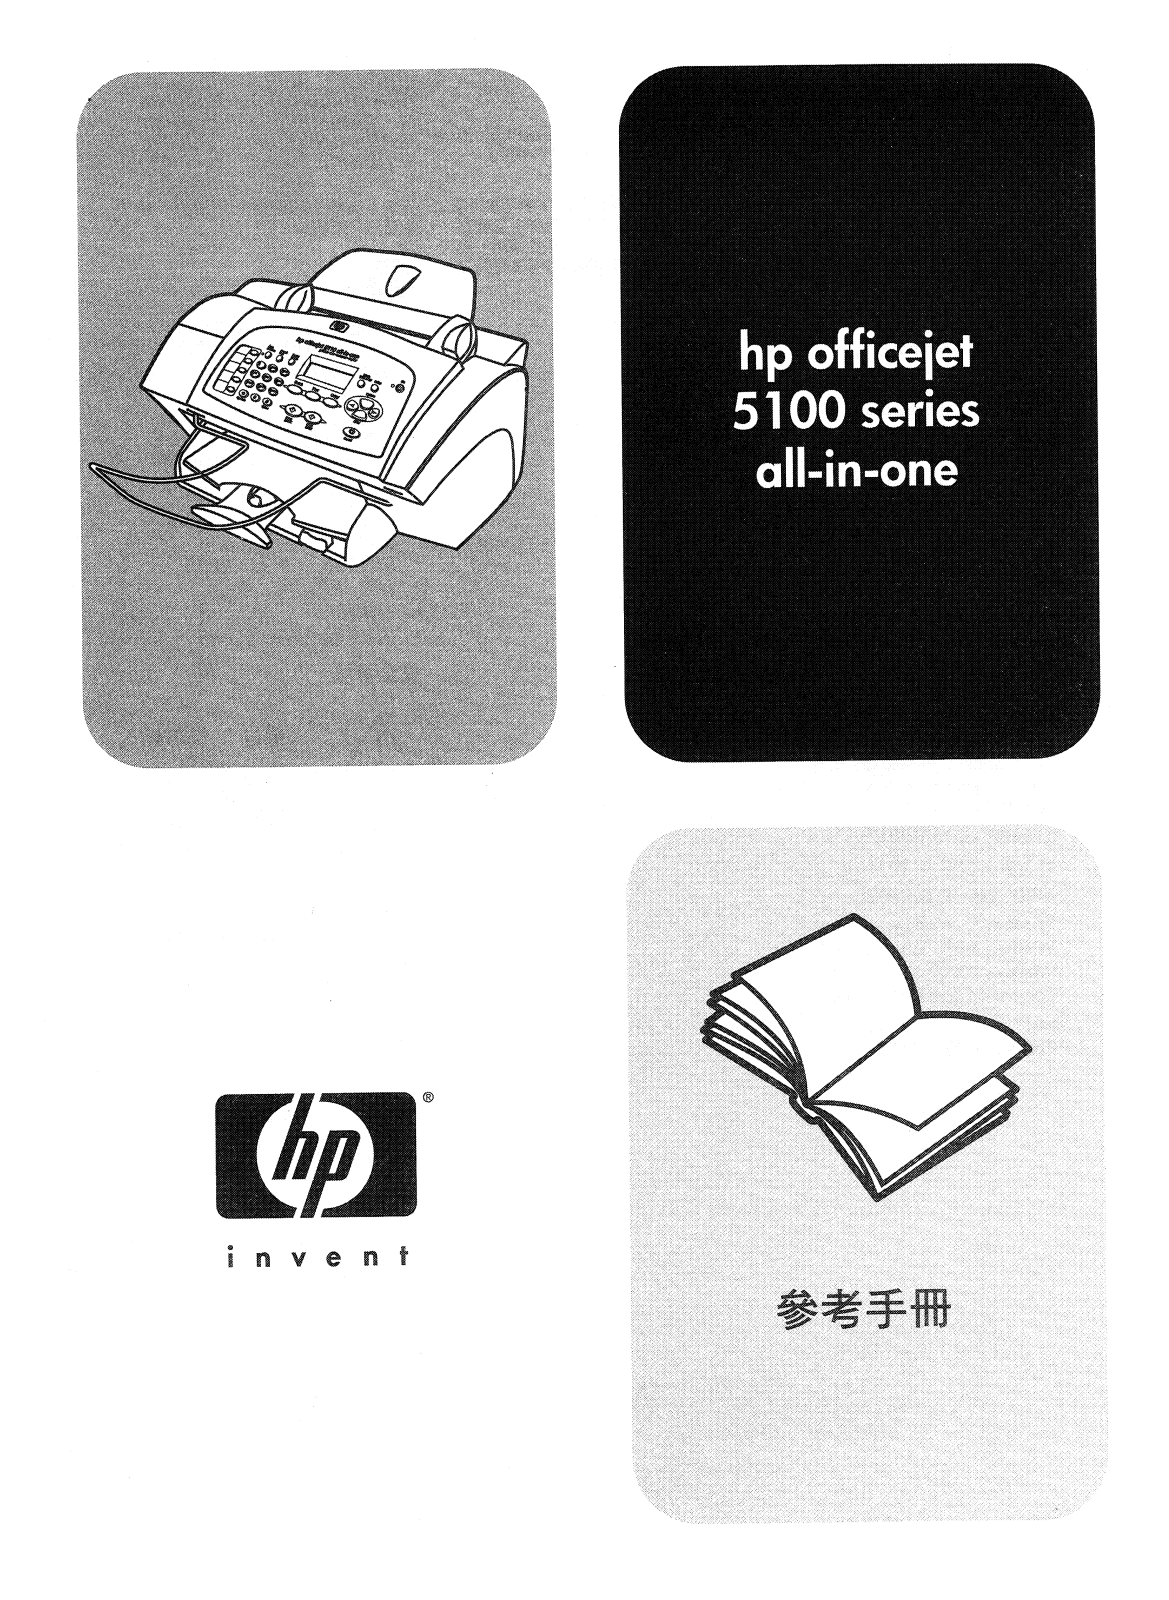 HP Q1679A, Q1680A, Q1681A, Q1682A, officeiet 5110 User guide